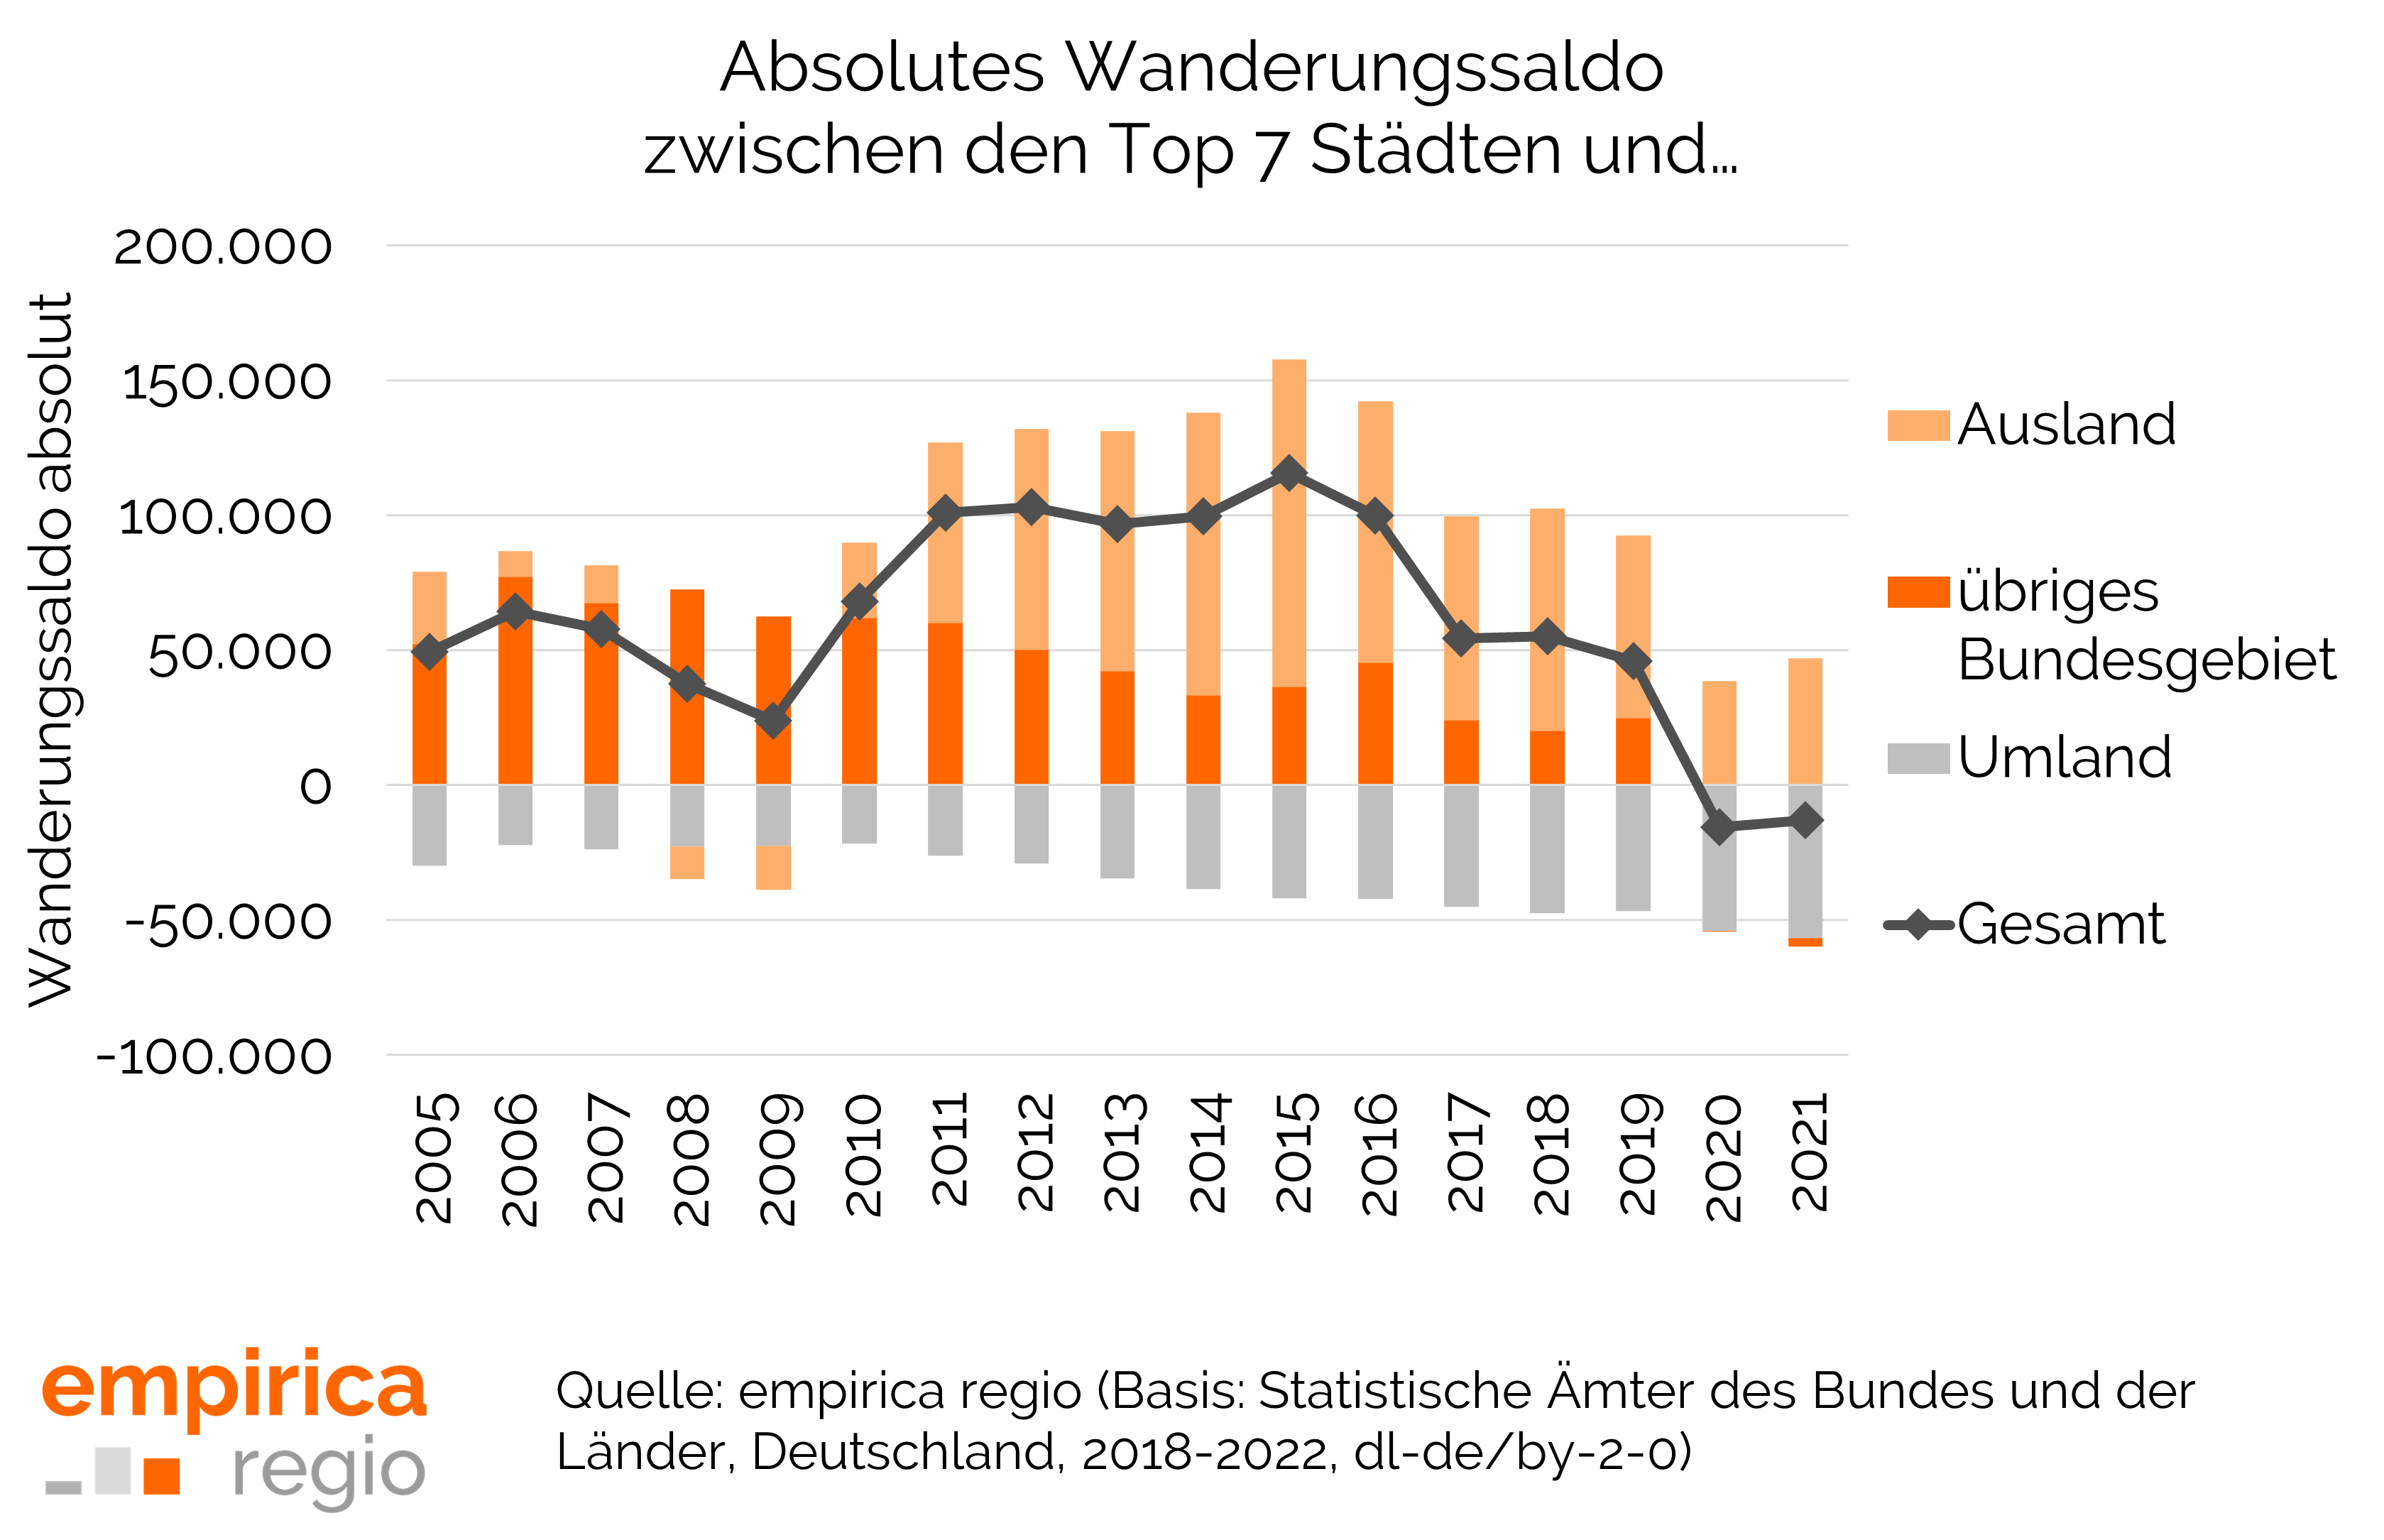 Absolutes Wanderungssaldo der Top 7 Städte (zusmamengefasst) in den Jahren 2005 bis 2021 innerhalb Deutschlands